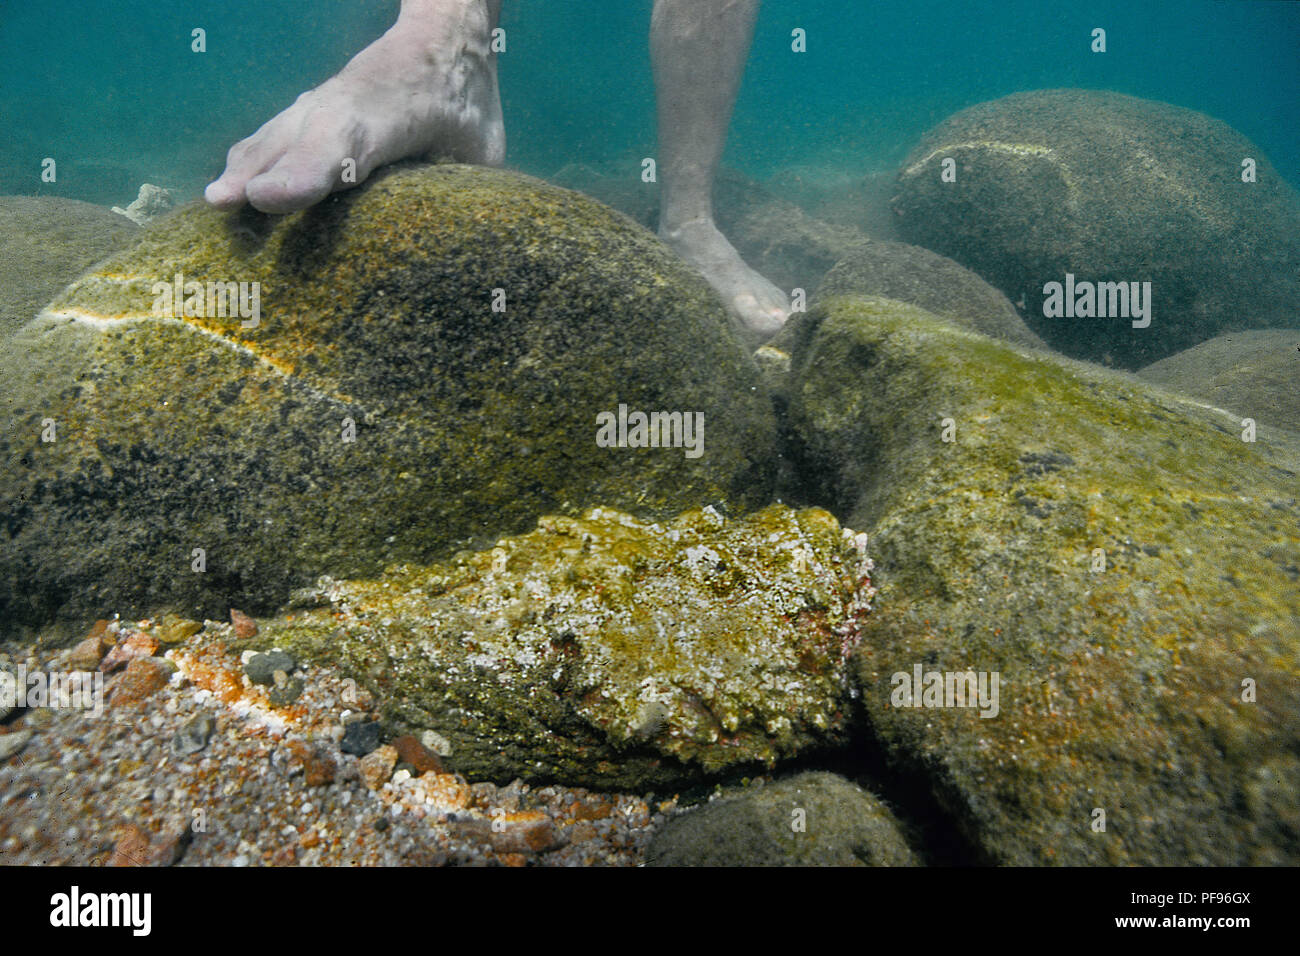 Reef poisson-pierre ou du vrai poisson-pierre (Synanceia verrucosa), le pays le plus venimeux, les poissons à l'eau peu profonde à côté des pieds humains, de l'Atoll d'Ari, l'île Maledive Banque D'Images